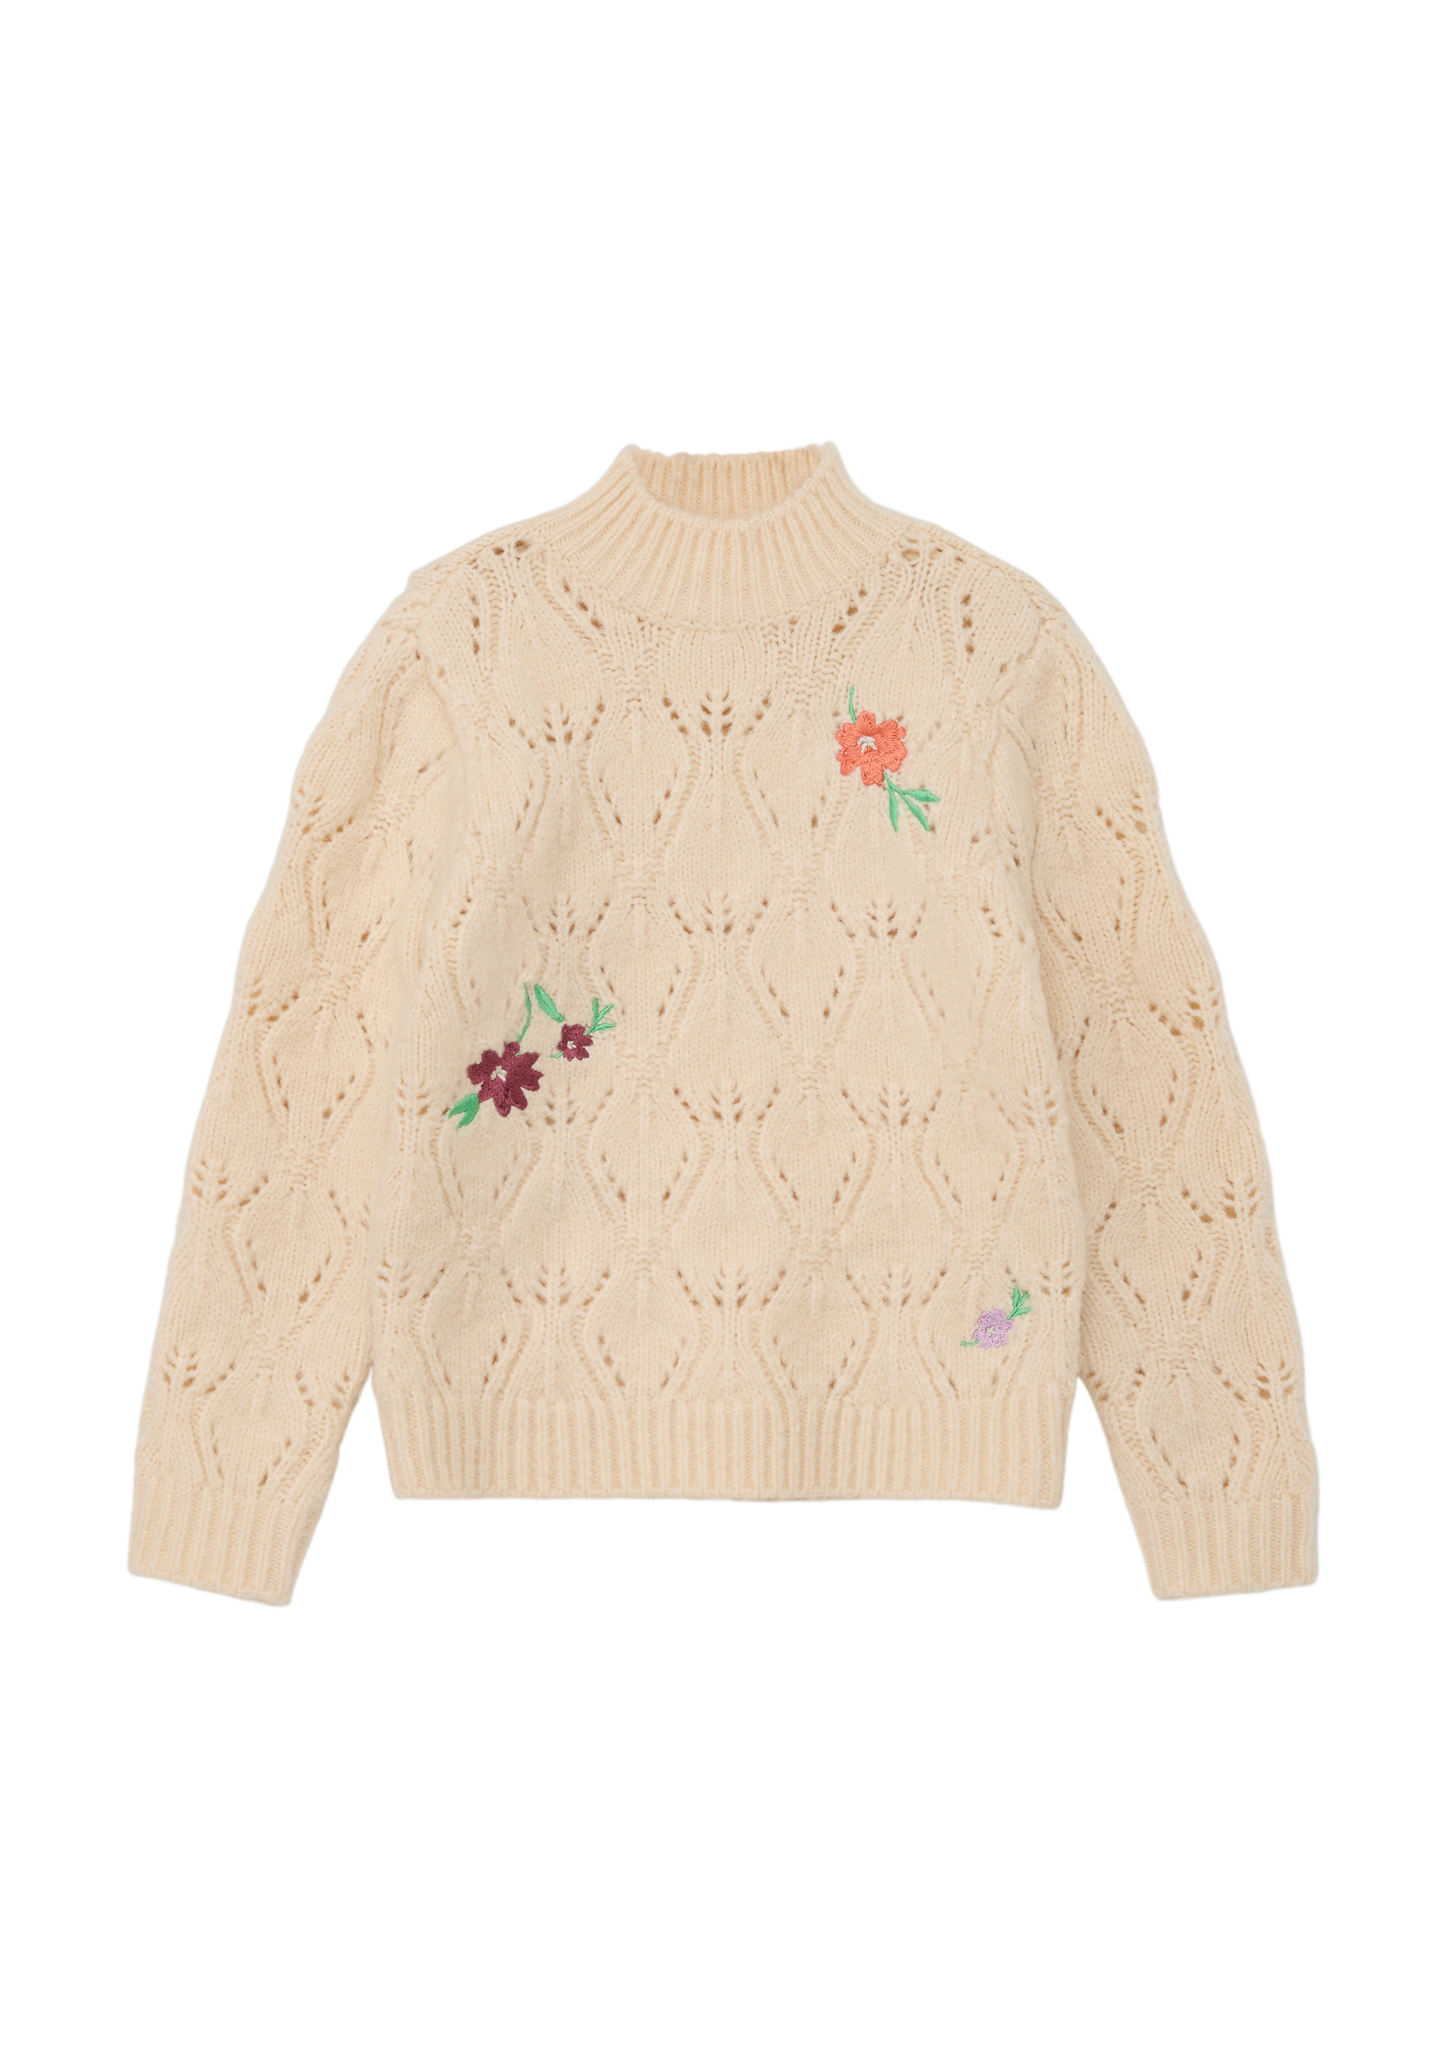 s.Oliver - Pullover mit Blüten-Stickerei, Kinder, Beige von s.Oliver